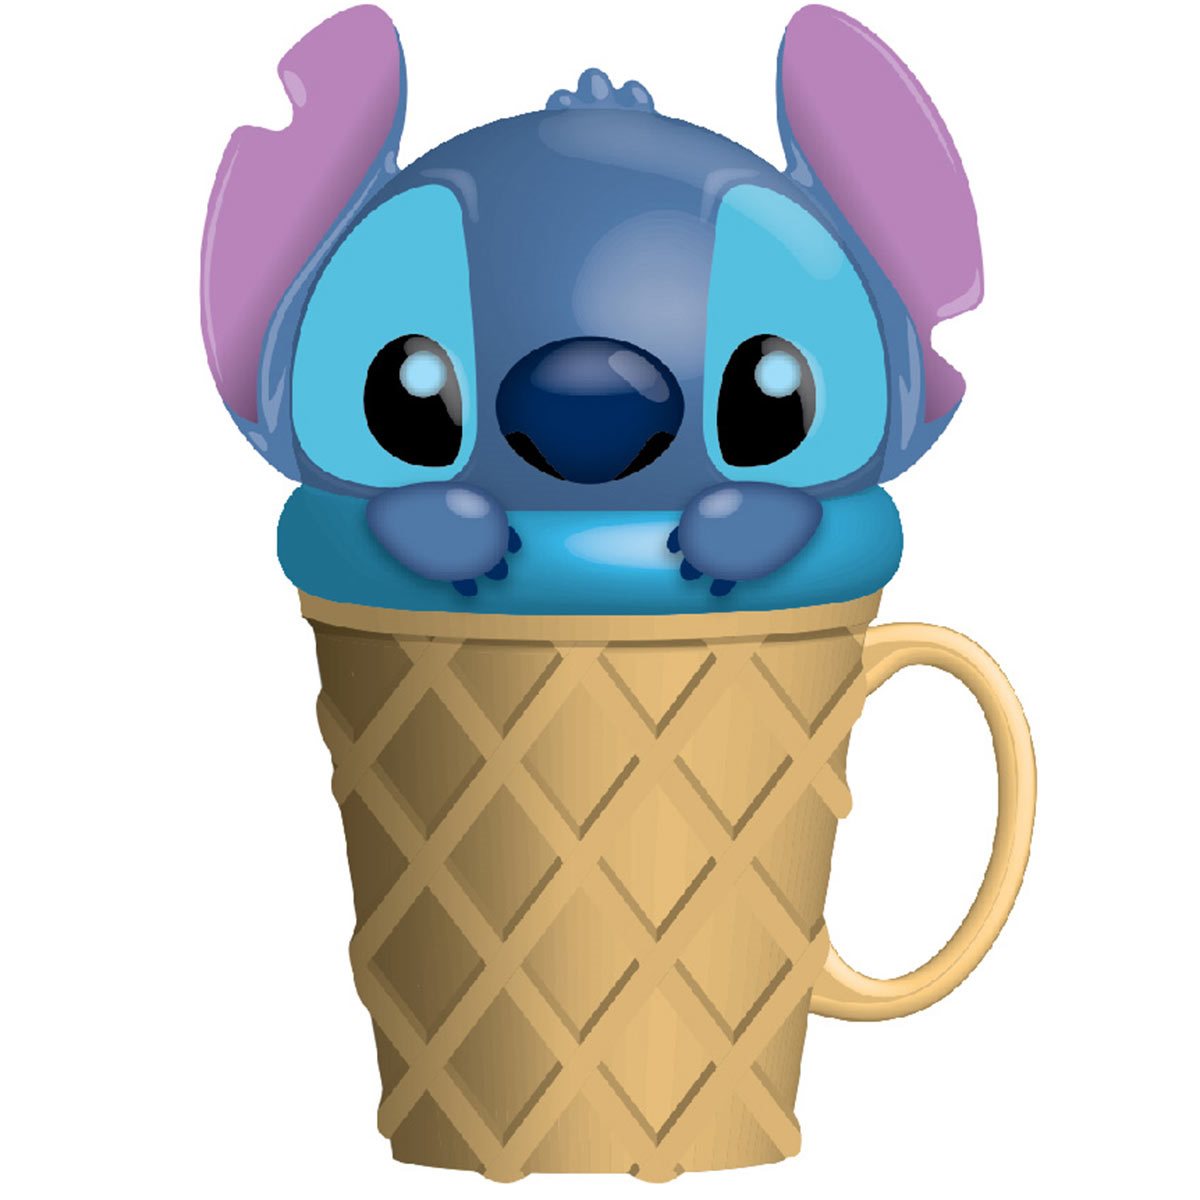 Lilo & Stitch Ice Cream Shoppe 16oz Cold Cup